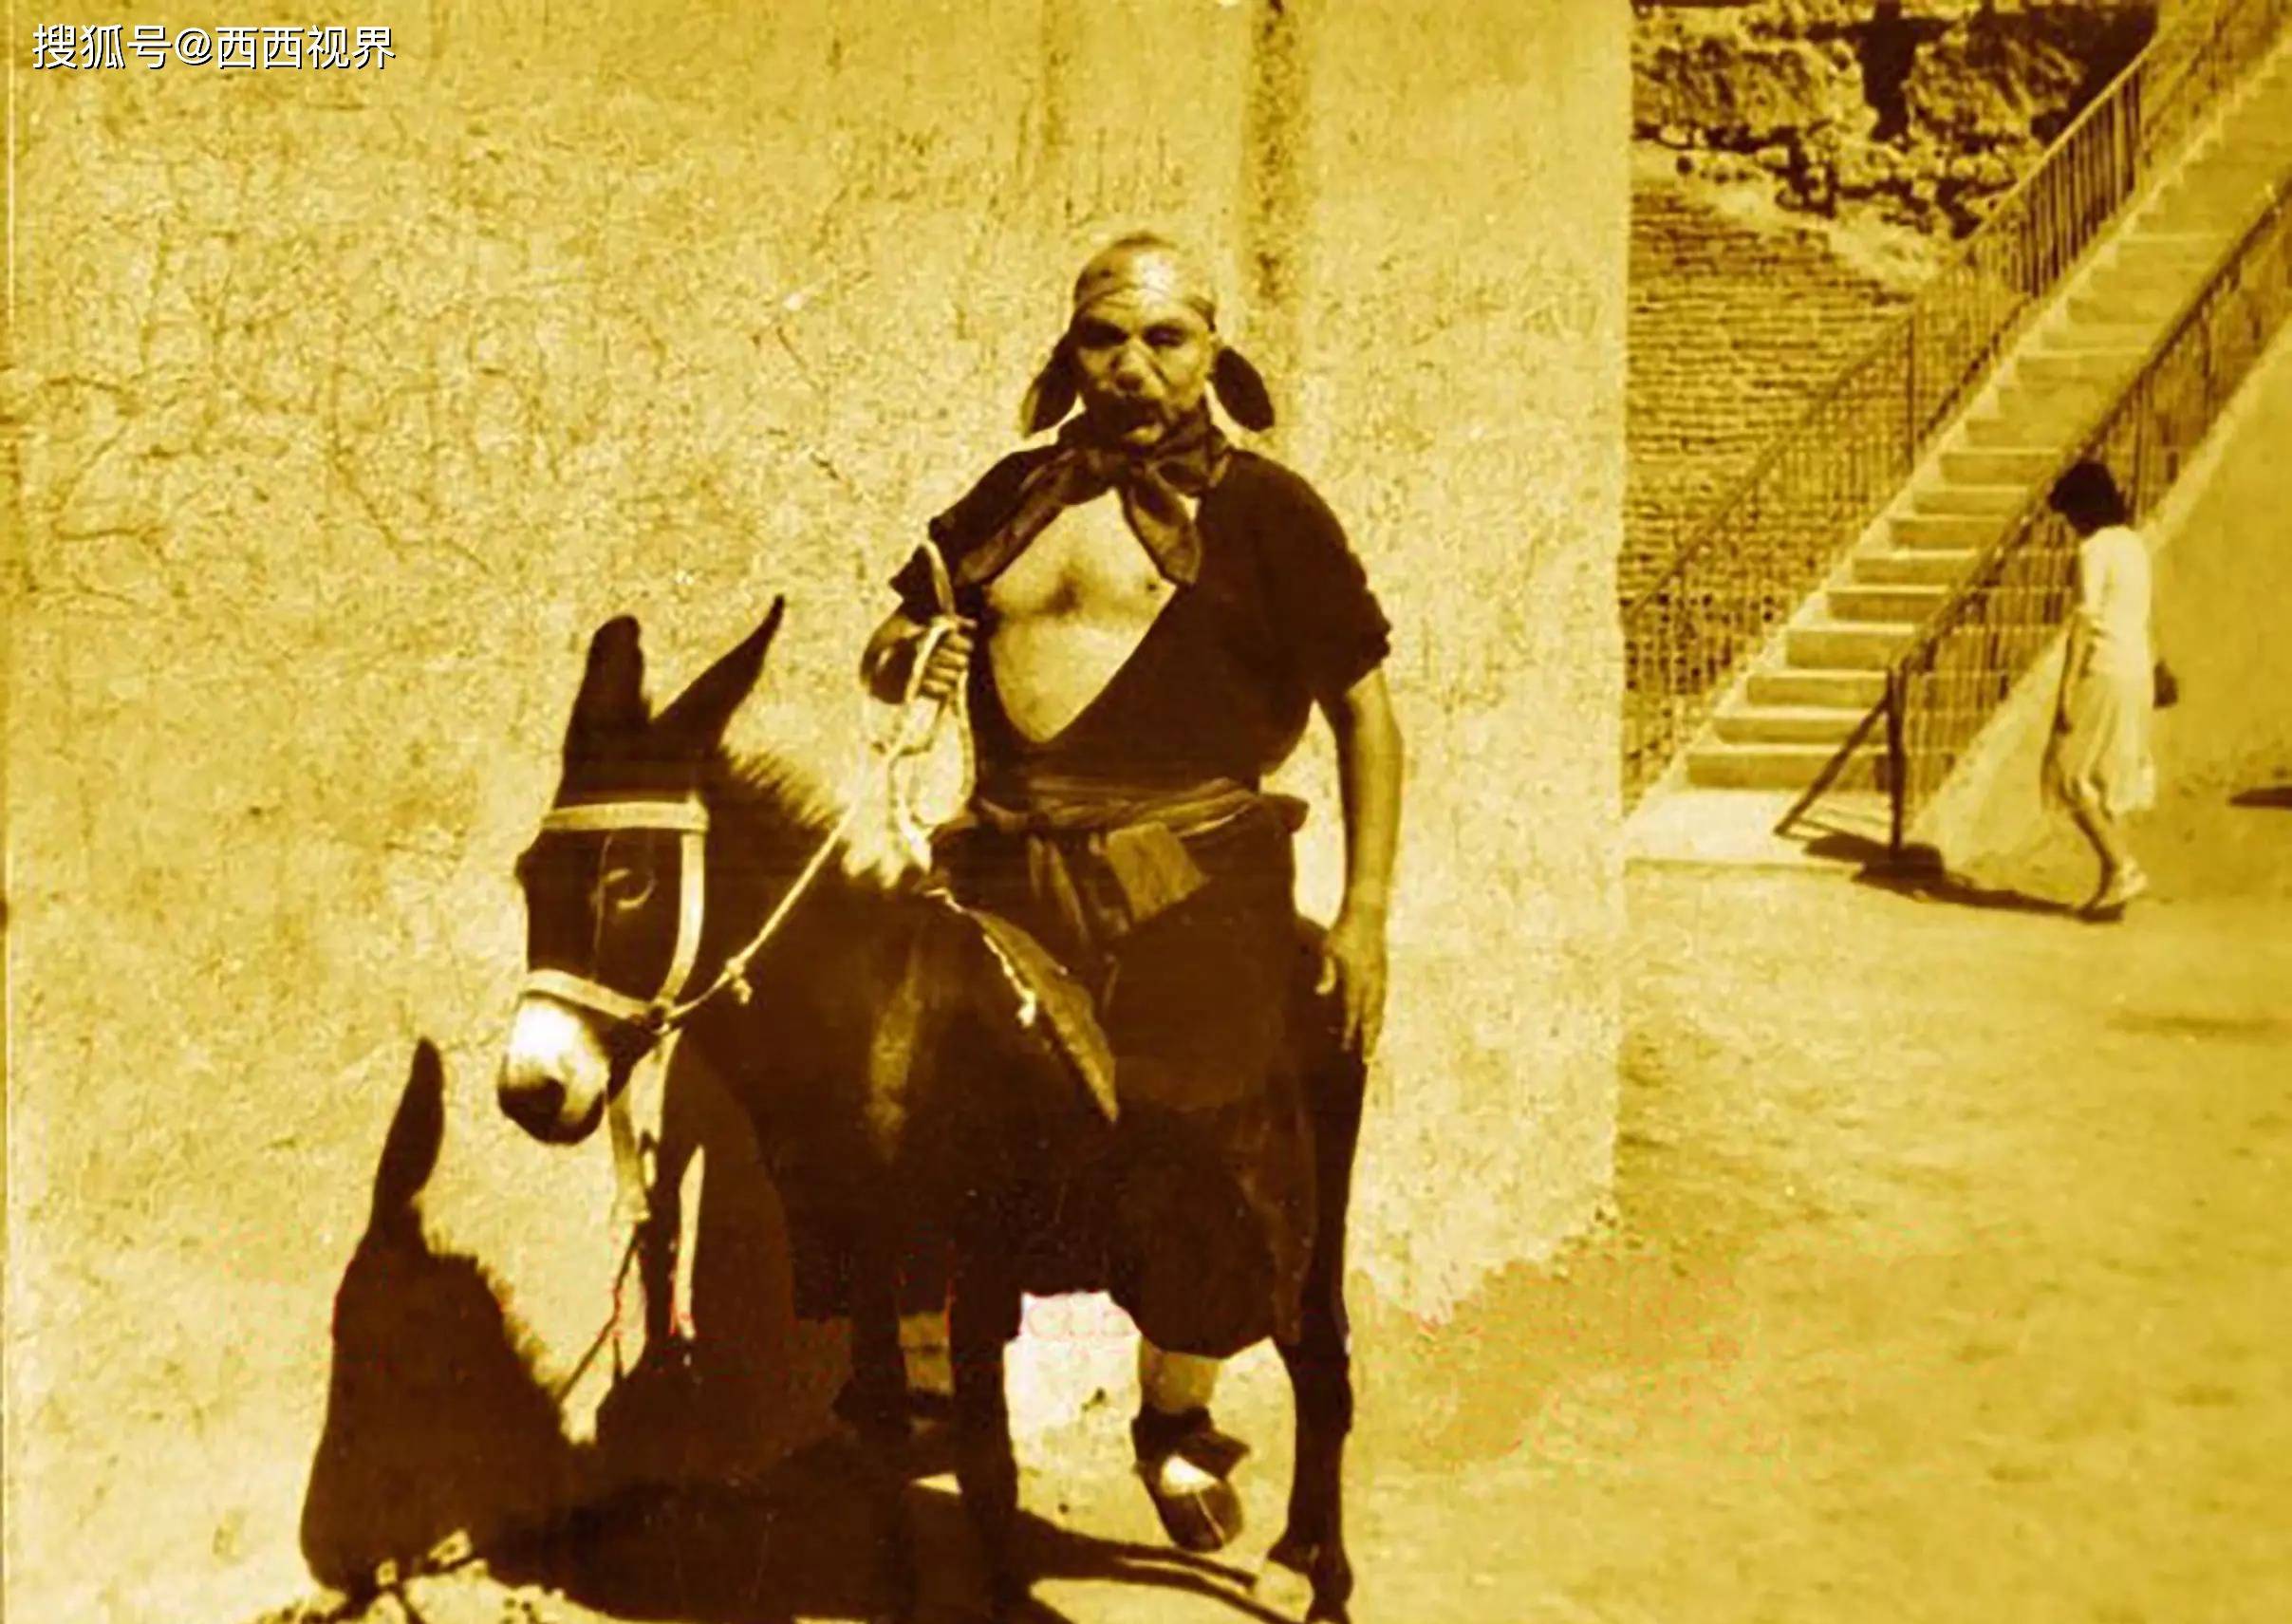 马德华饰演的猪八戒,在新疆火焰山骑毛驴的珍贵照片